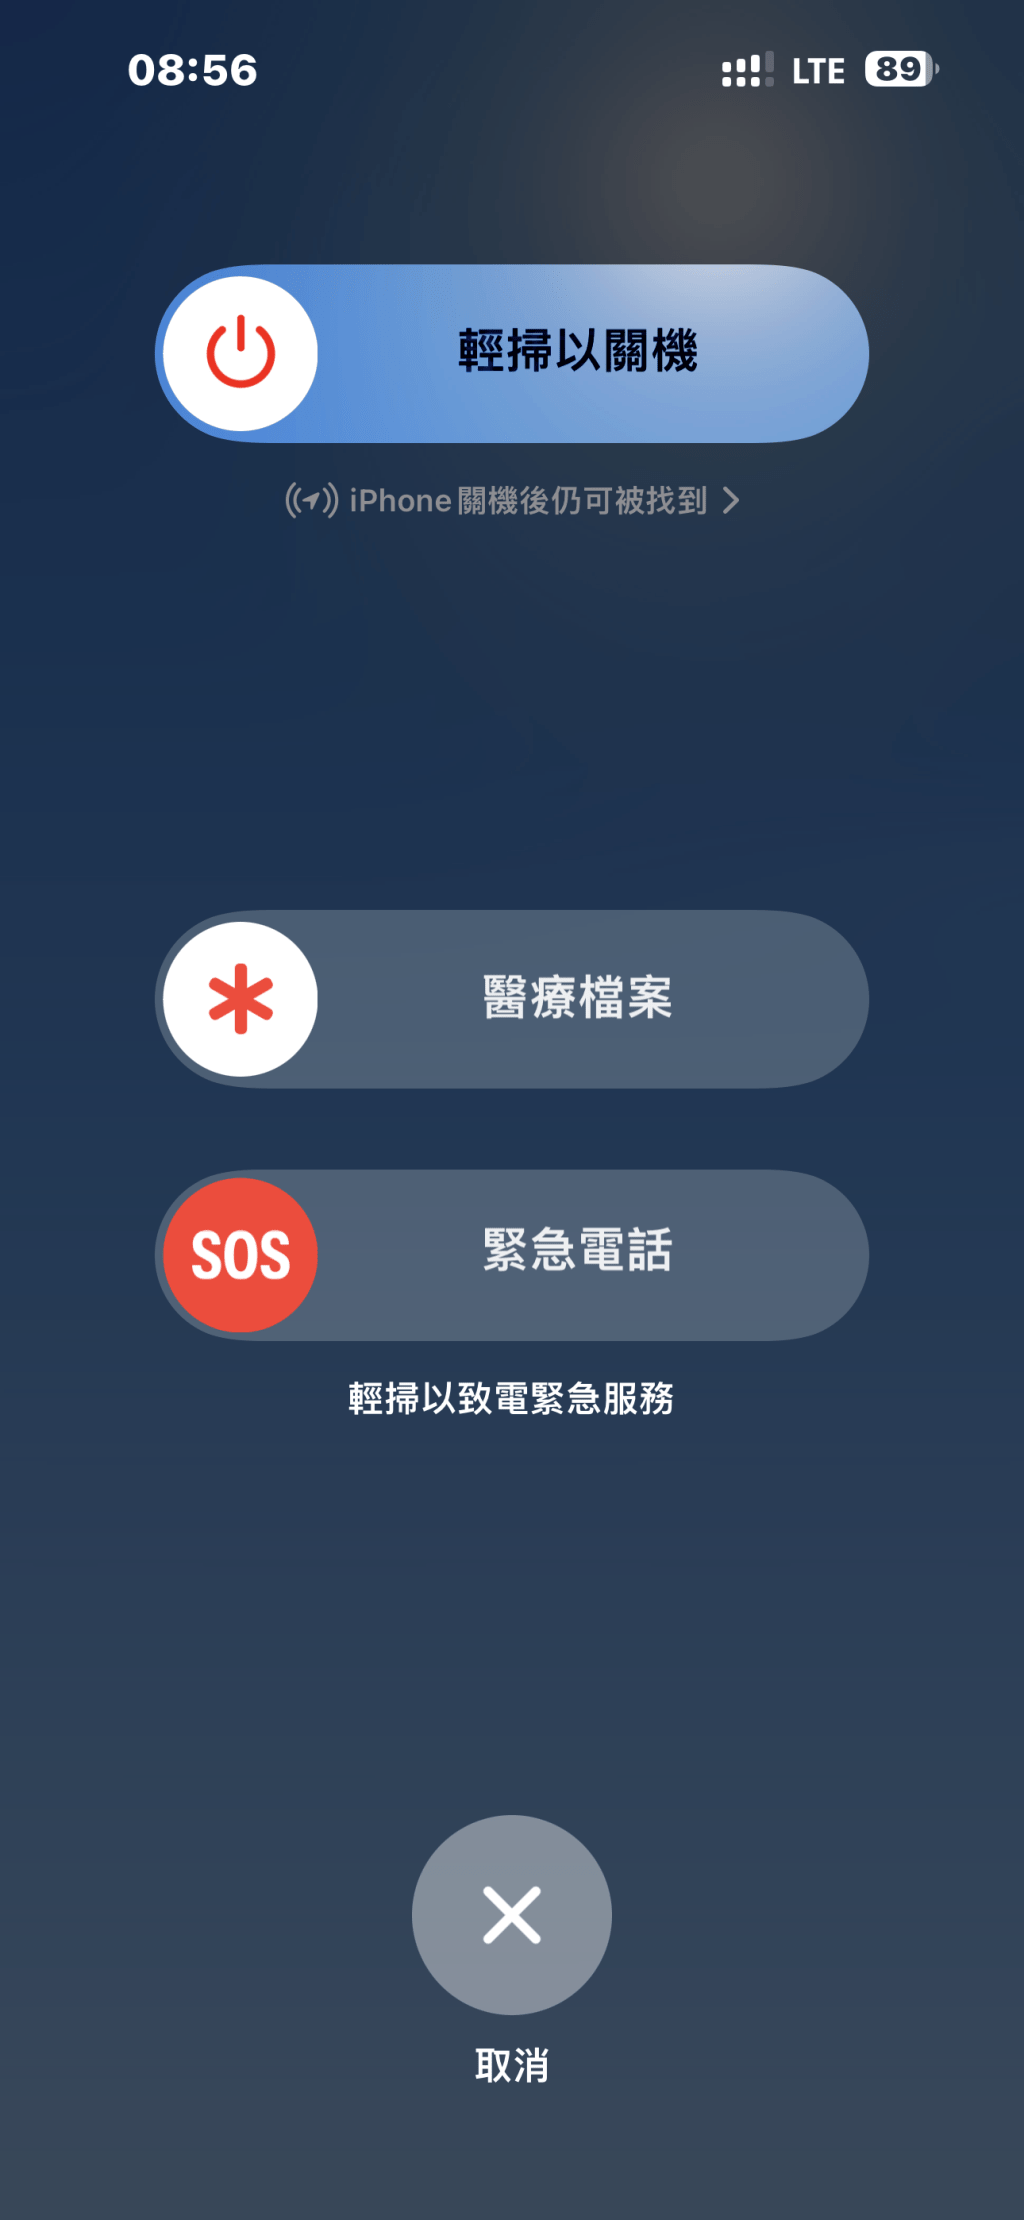 手机可发SOS紧急求救讯号。